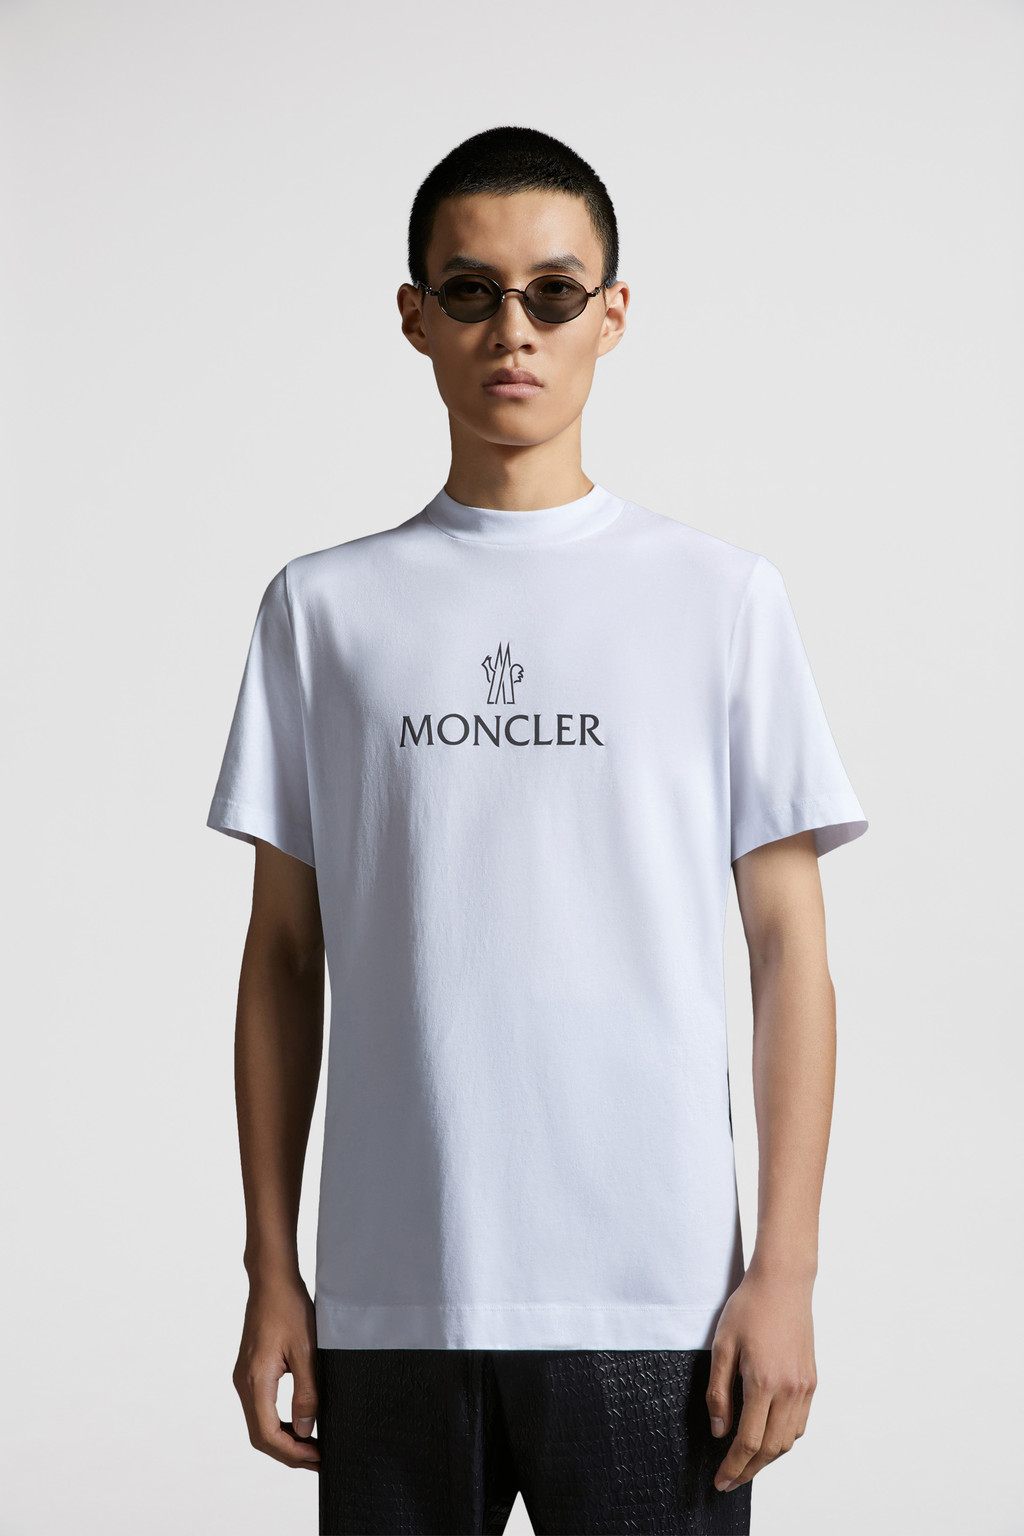 モンクレール メンズTシャツ XL 白 大きいサイズ着丈69cm - トップス